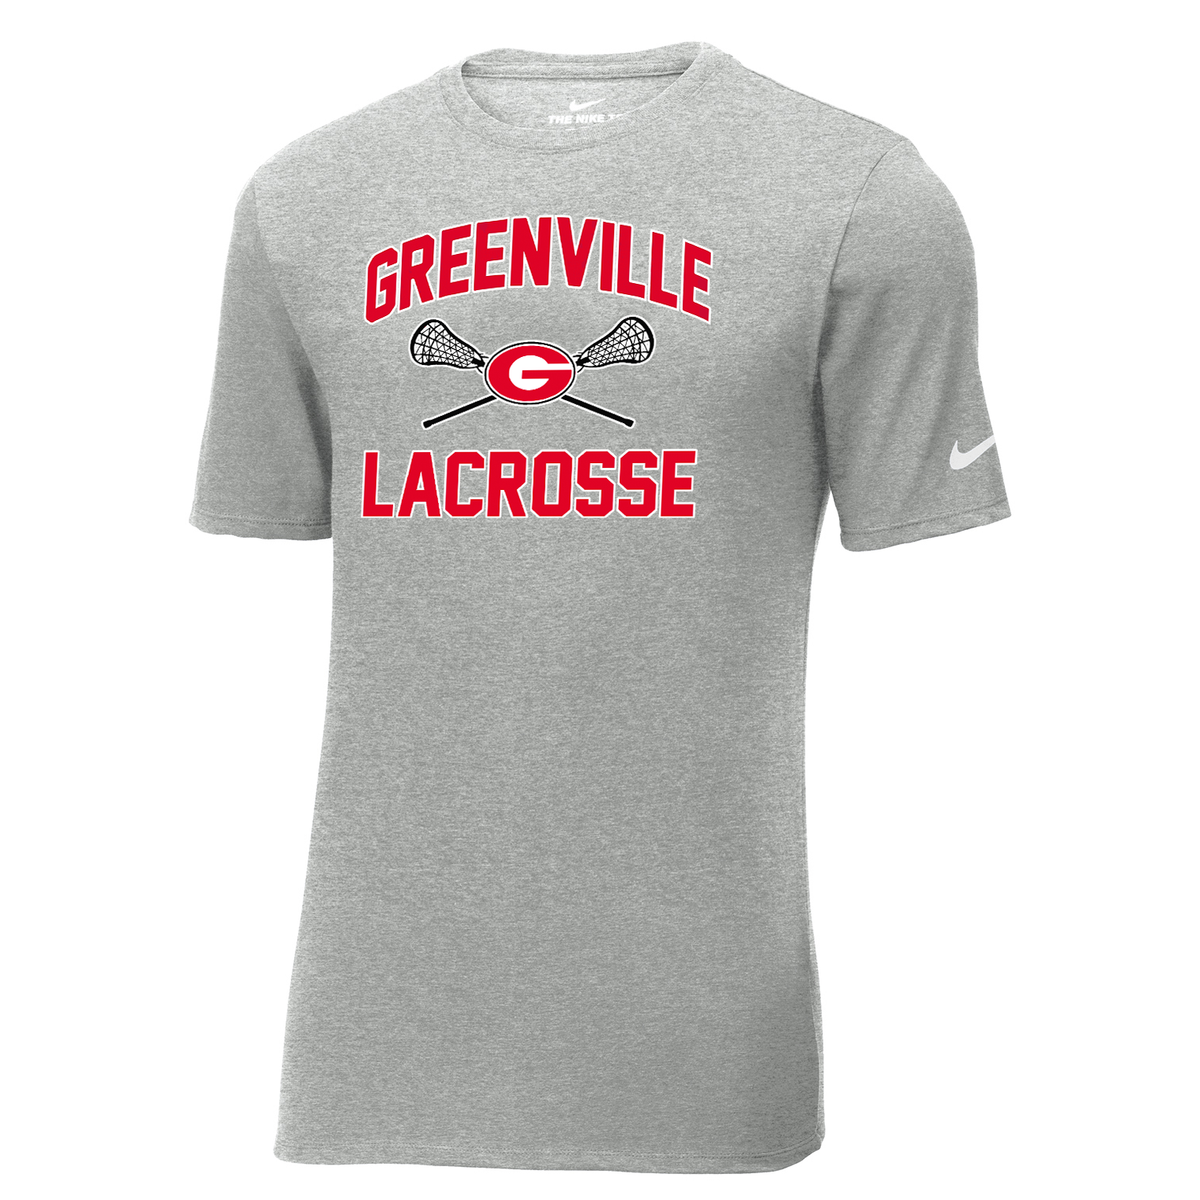 Greenville Girls Lacrosse Nike Core Cotton Tee